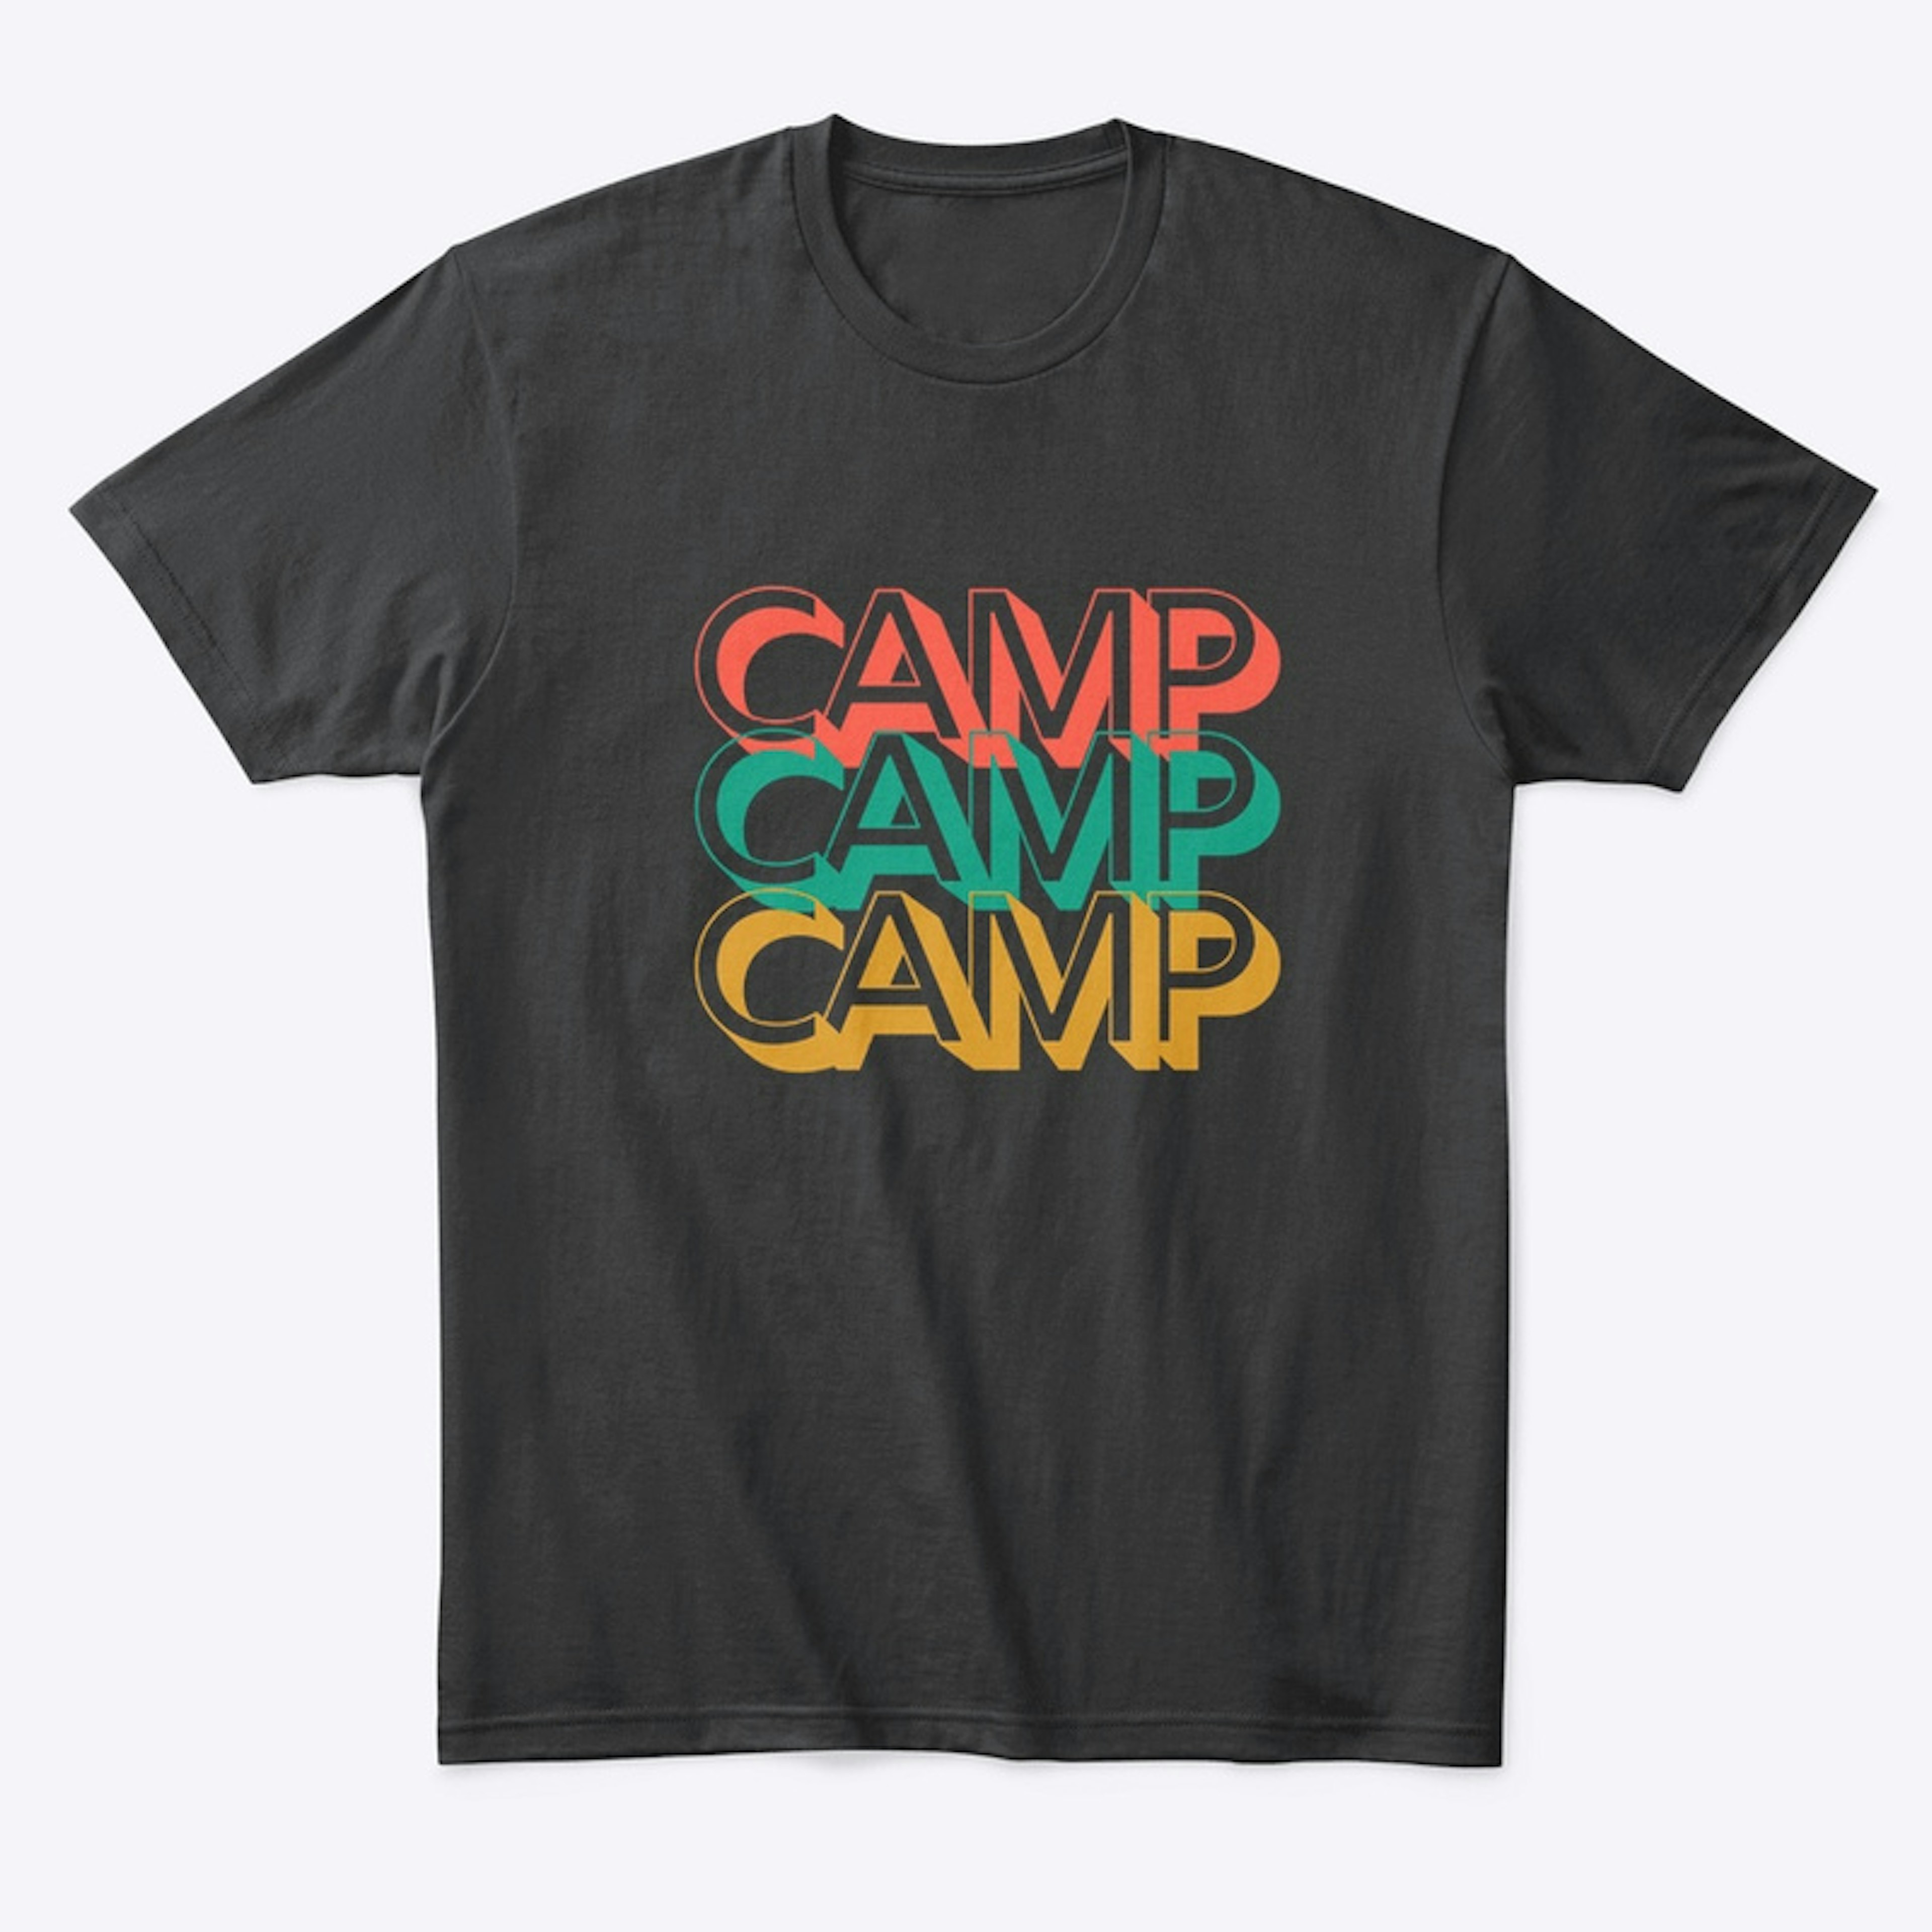 Camp Camp Camp